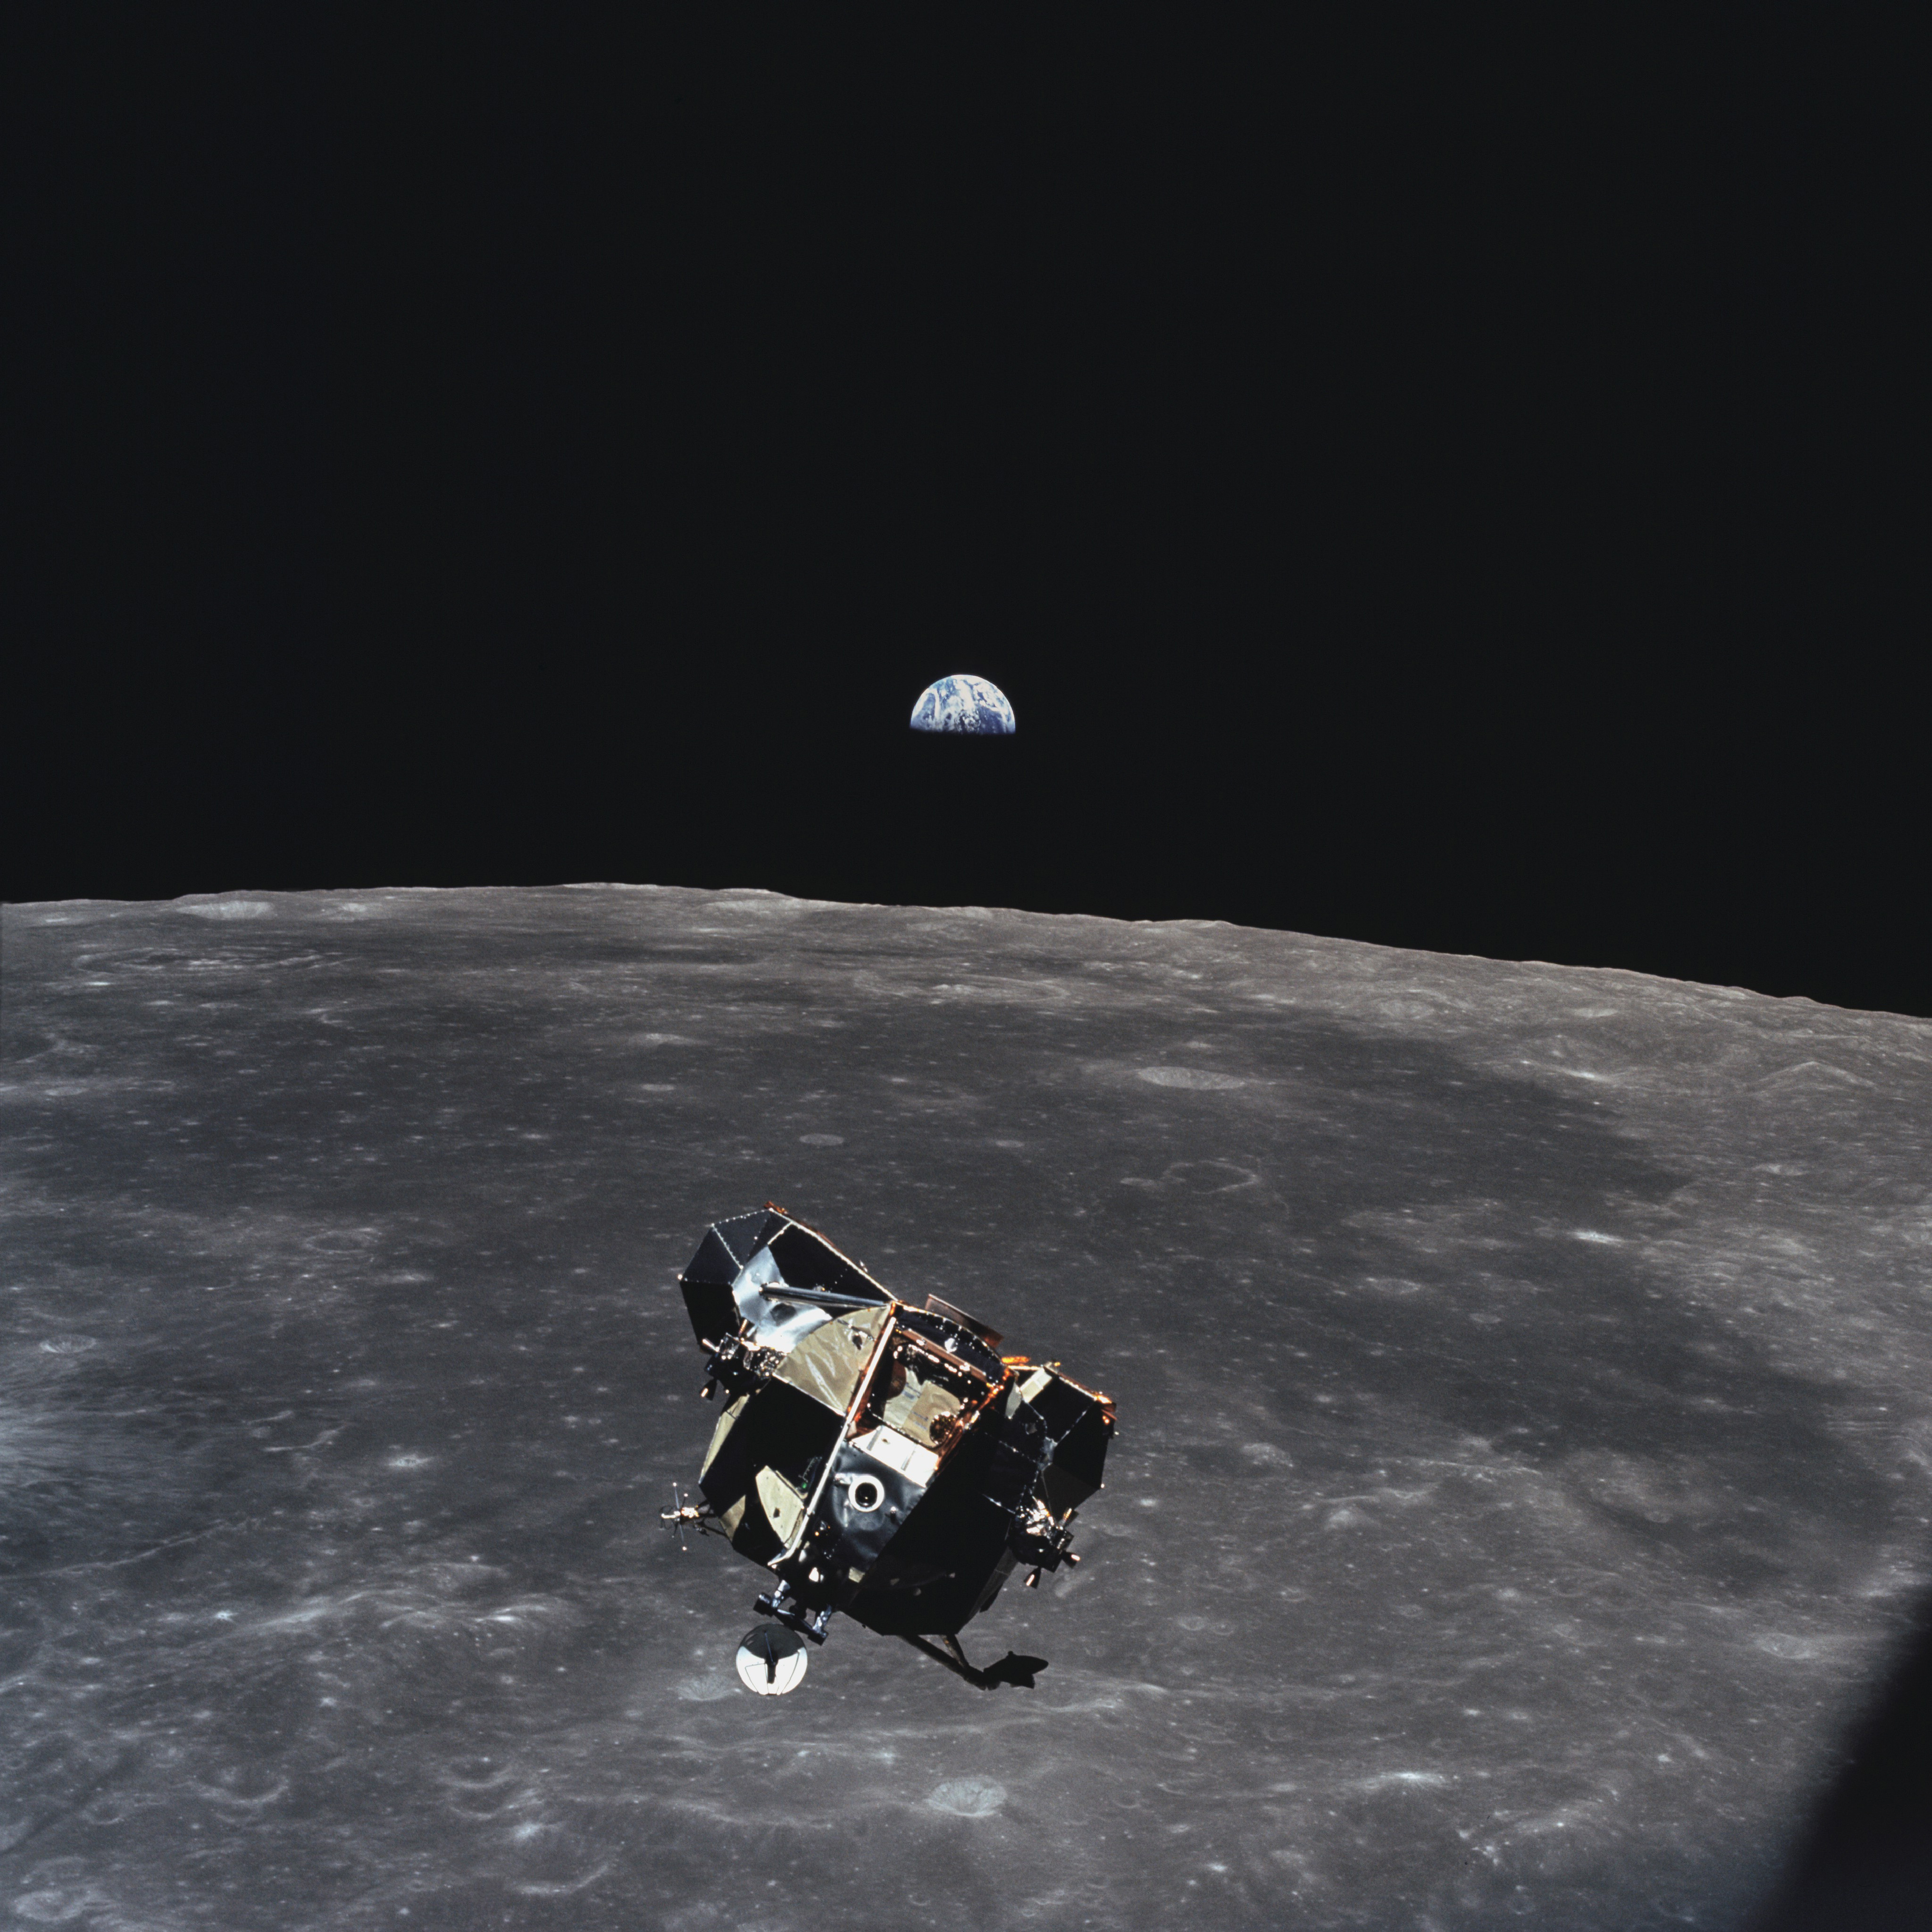 Le module lunaire (Ã©tage d'ascension uniquement) d'Apollo 11 photographiÃ© depuis le module de commande